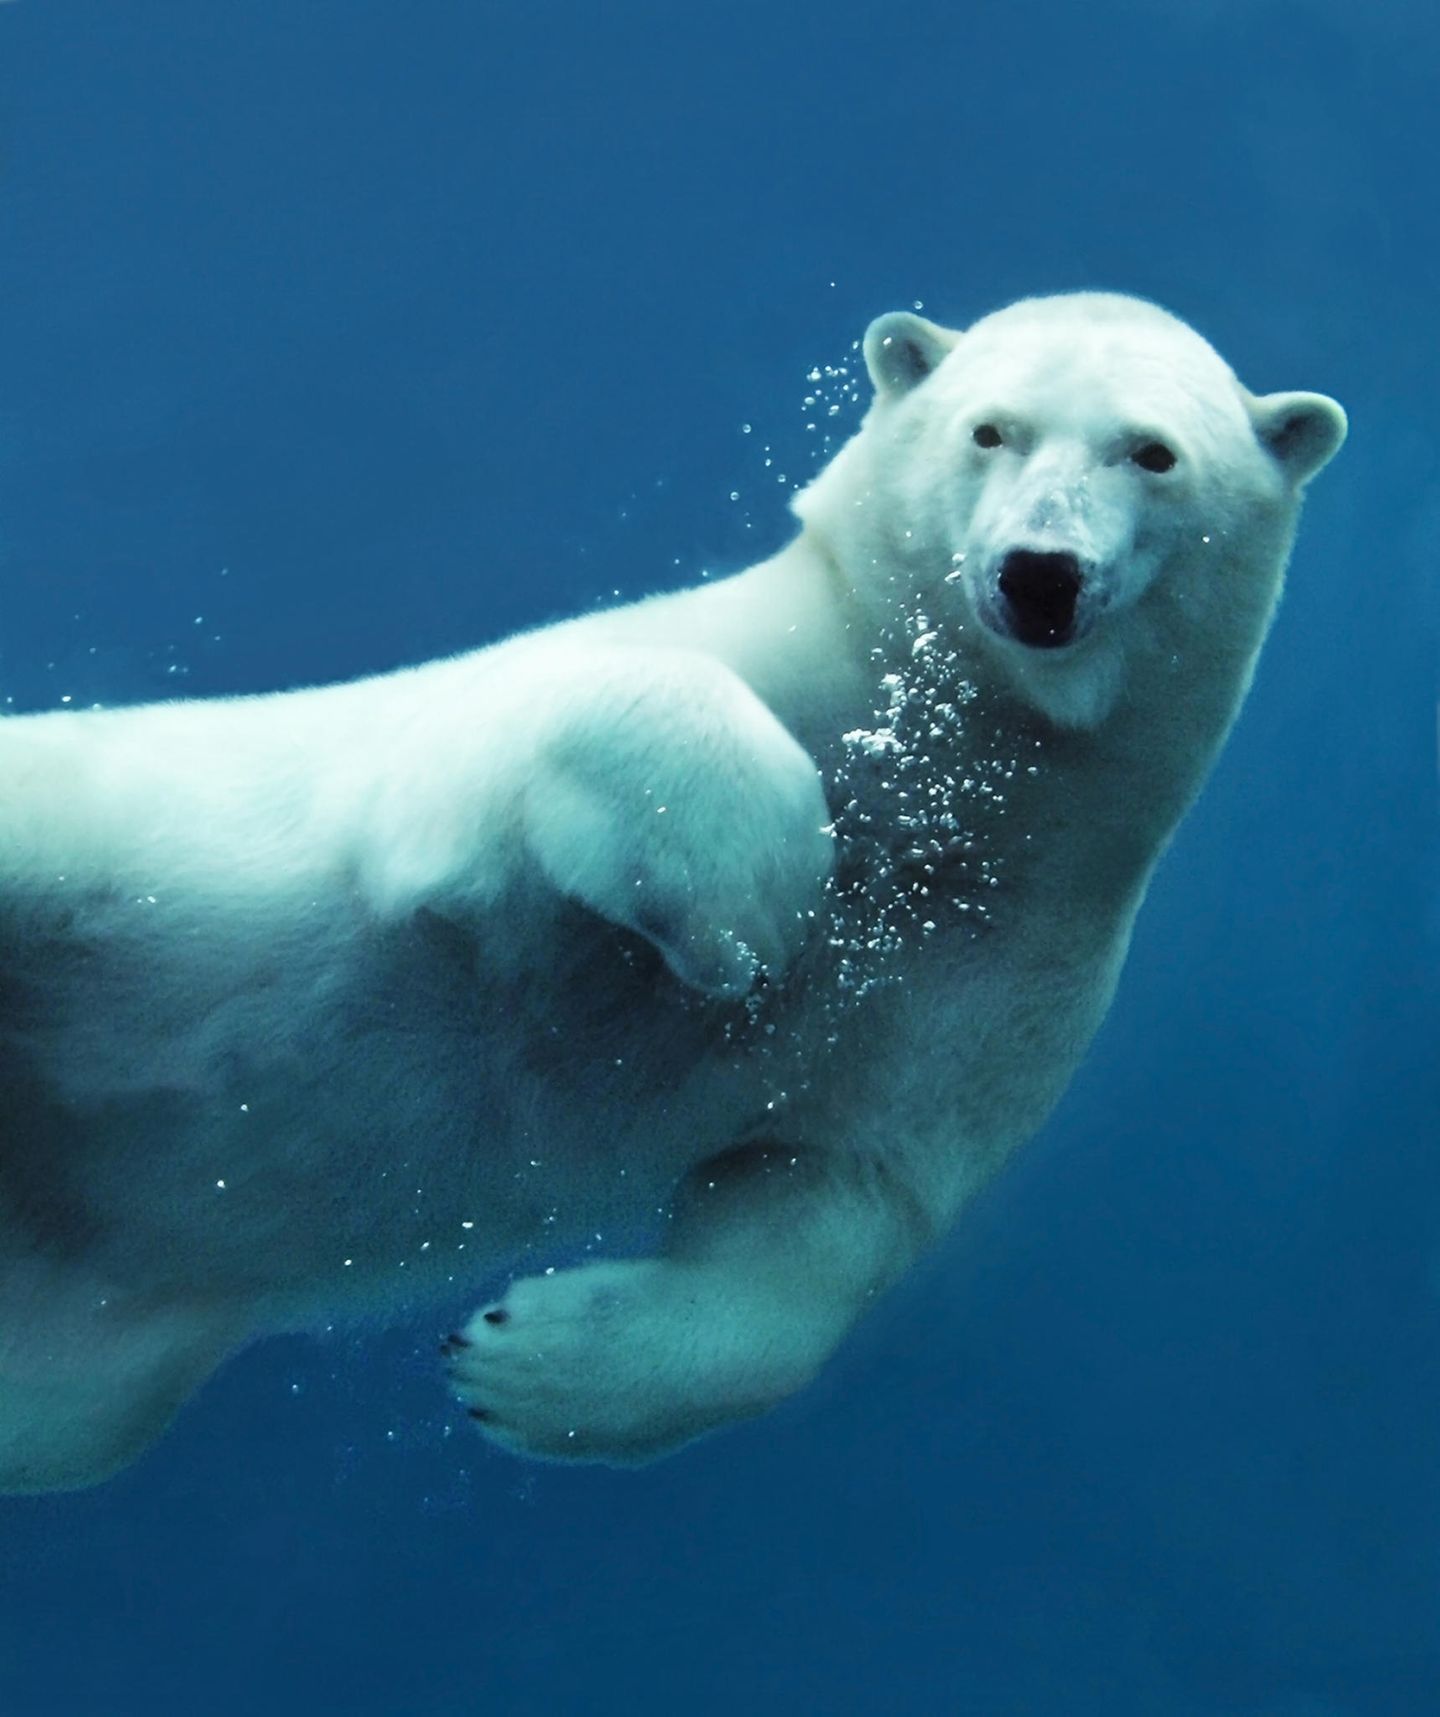 Schwimmender Eisbär unter Wasser